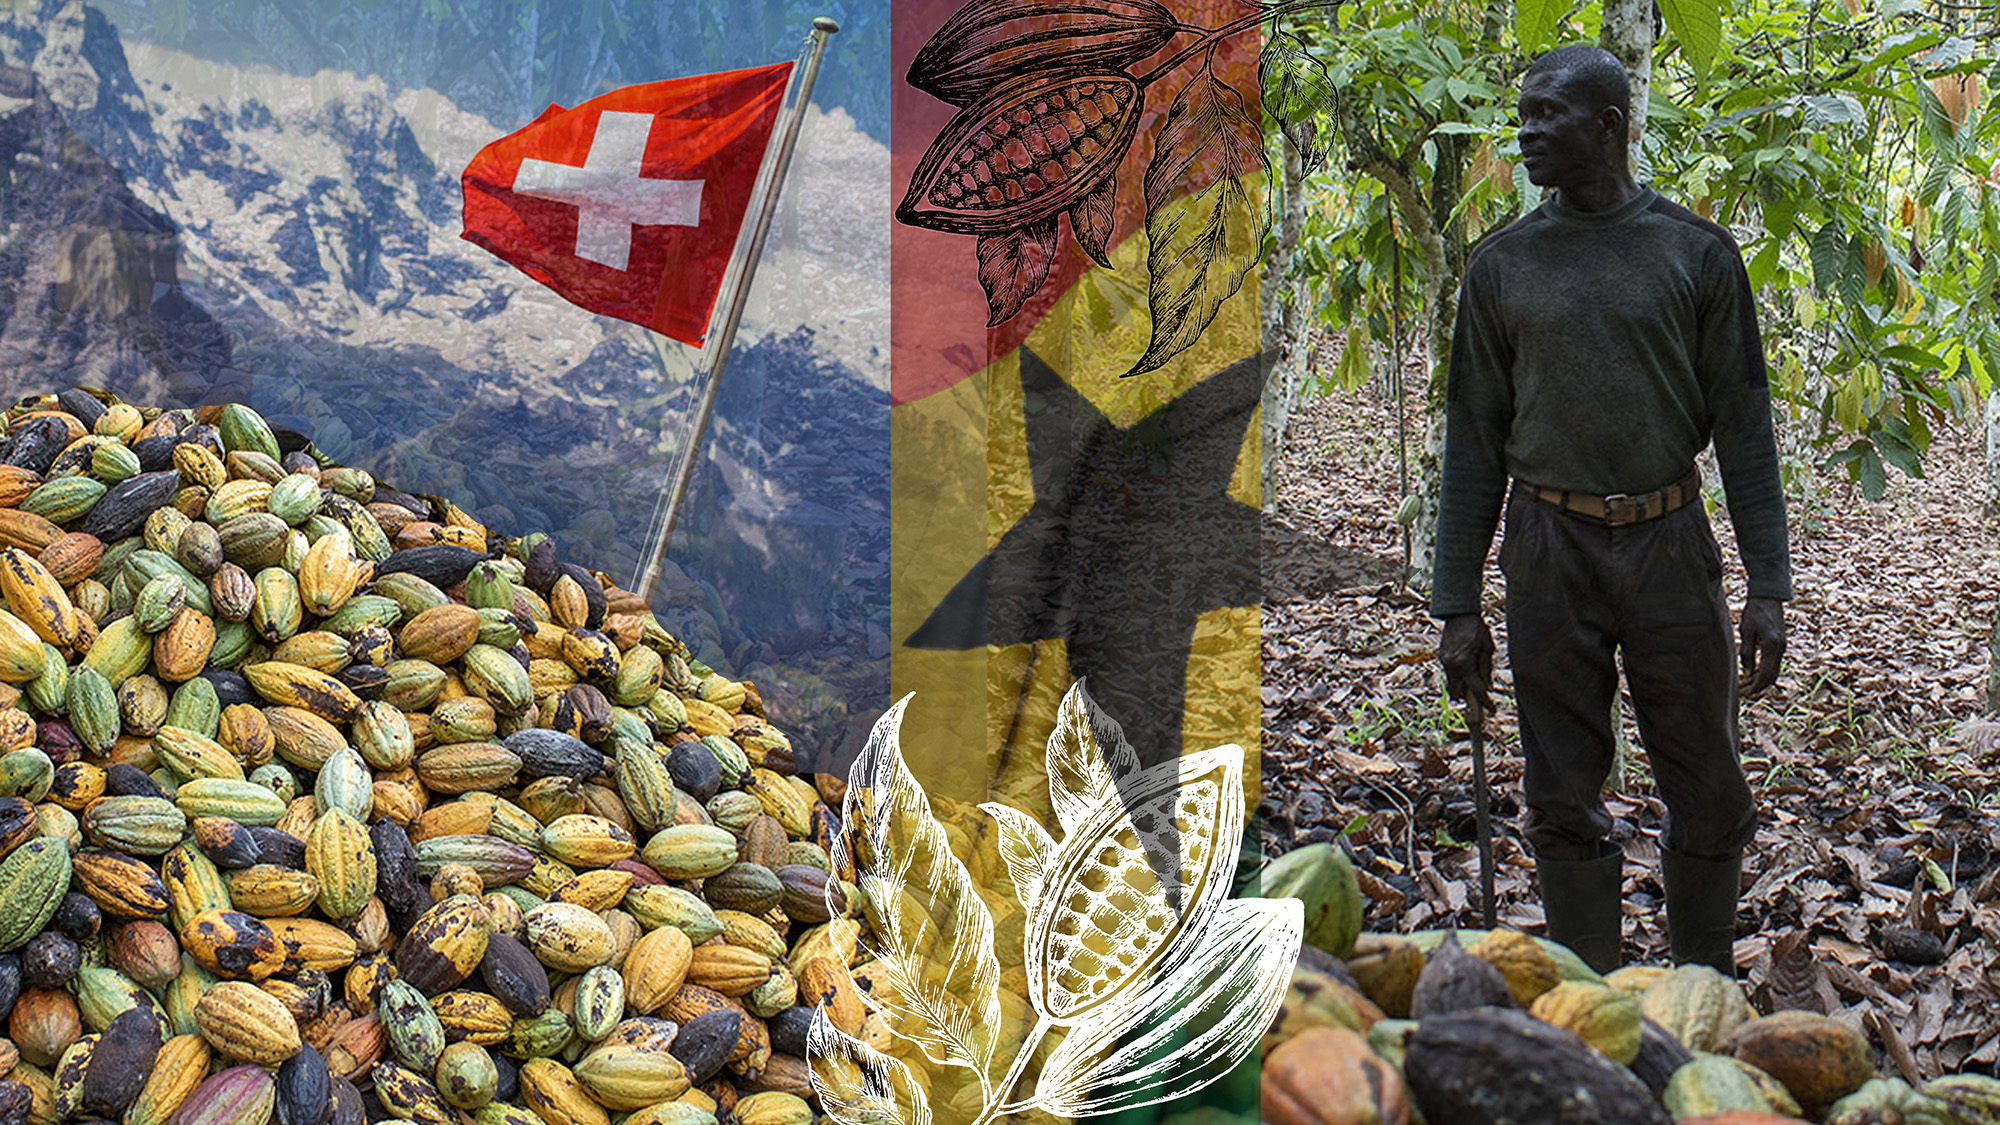 Image de montage du drapeau suisse et des montagnes, fèves de cacao, drapeau du Ghana, cultivateur de cacao.